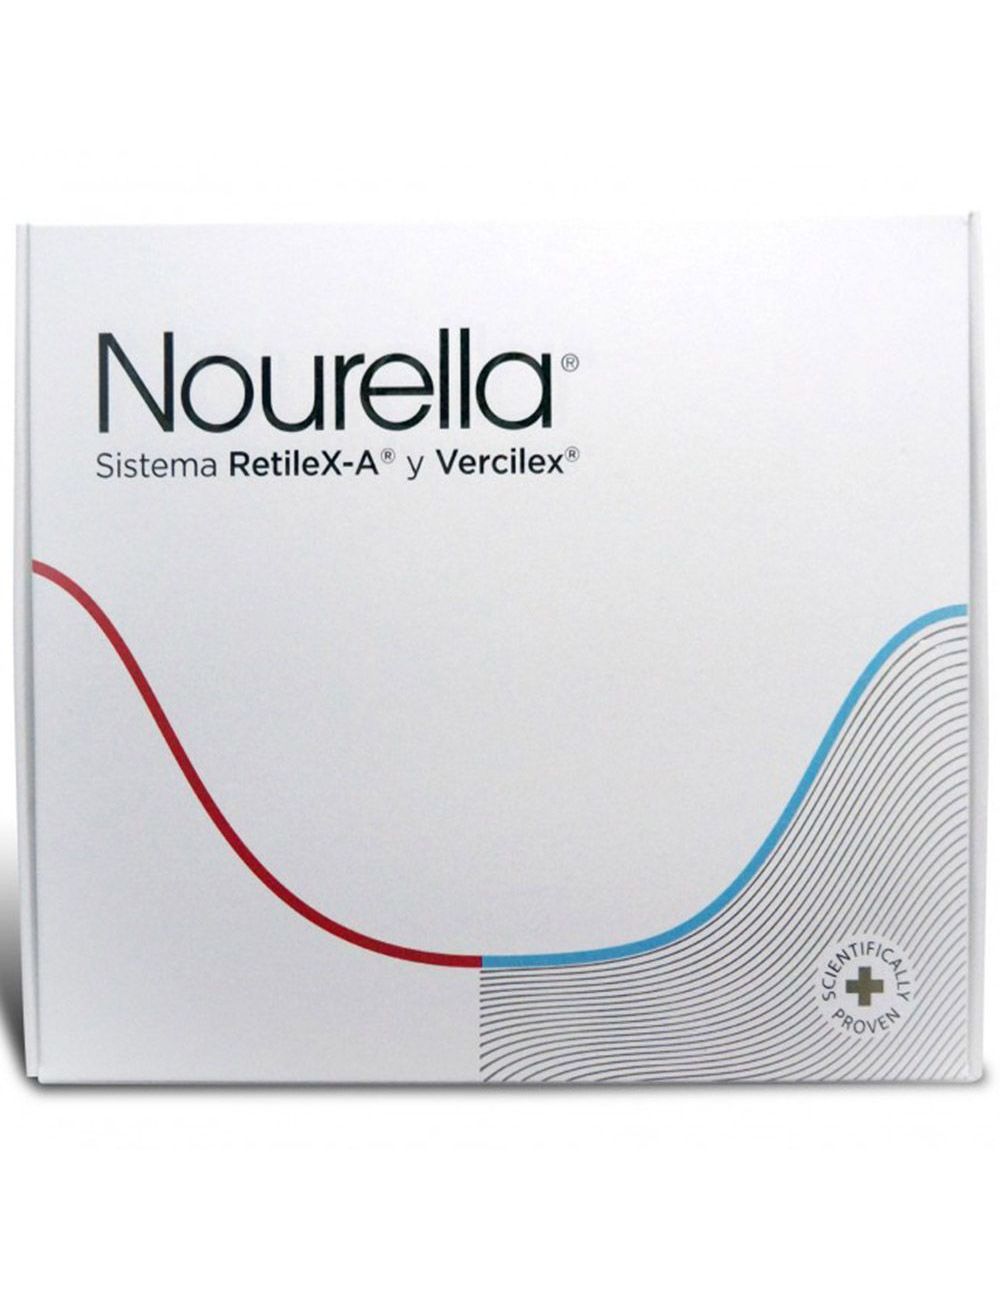 Nourella Kit Crema Tubo 30 mL + Caja Con 60 Tabletas